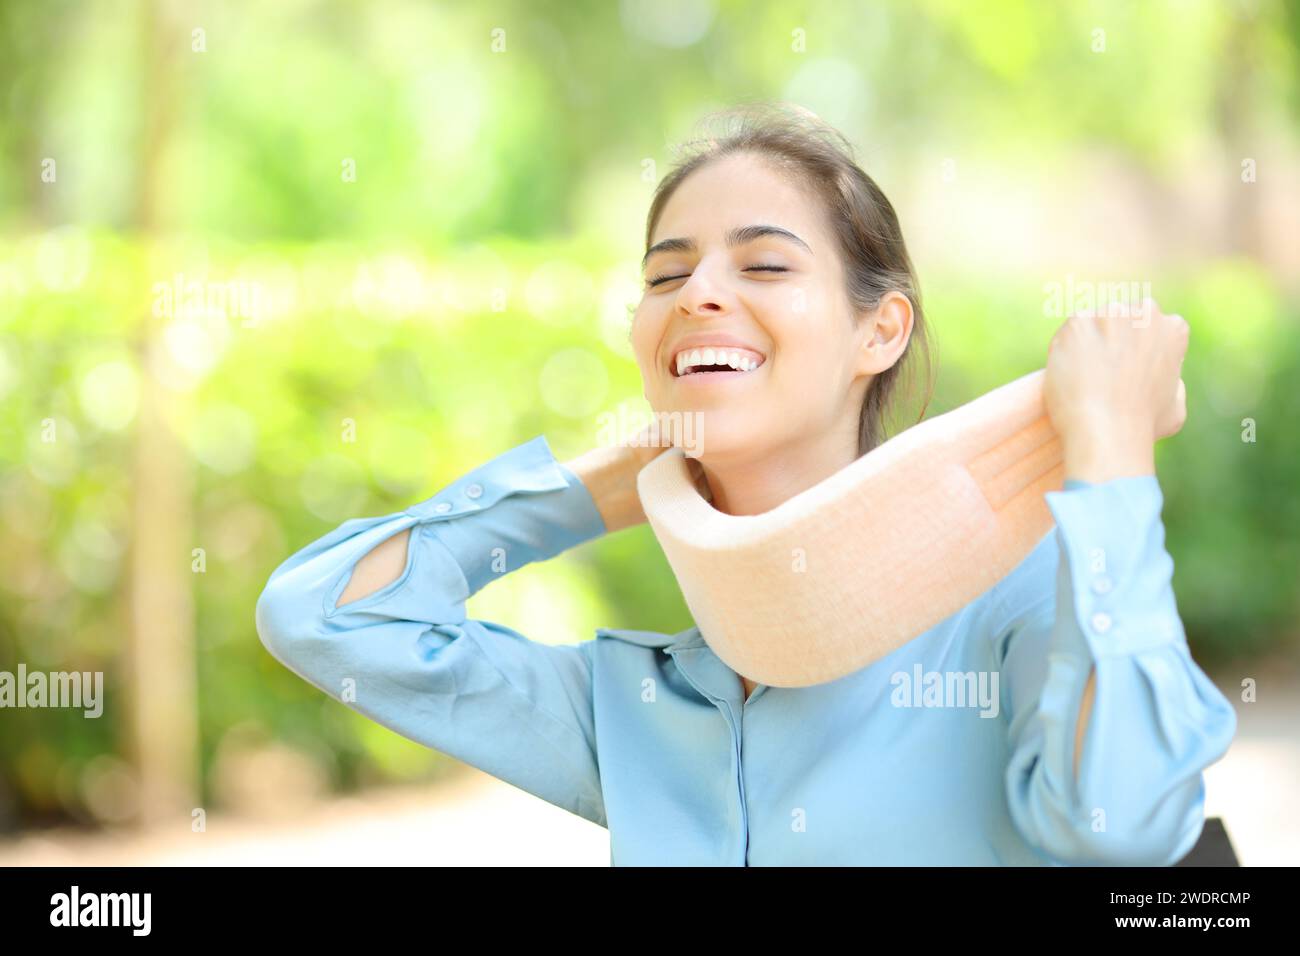 Femme heureuse enlevant l'attelle du cou après convalescence dans un parc Banque D'Images